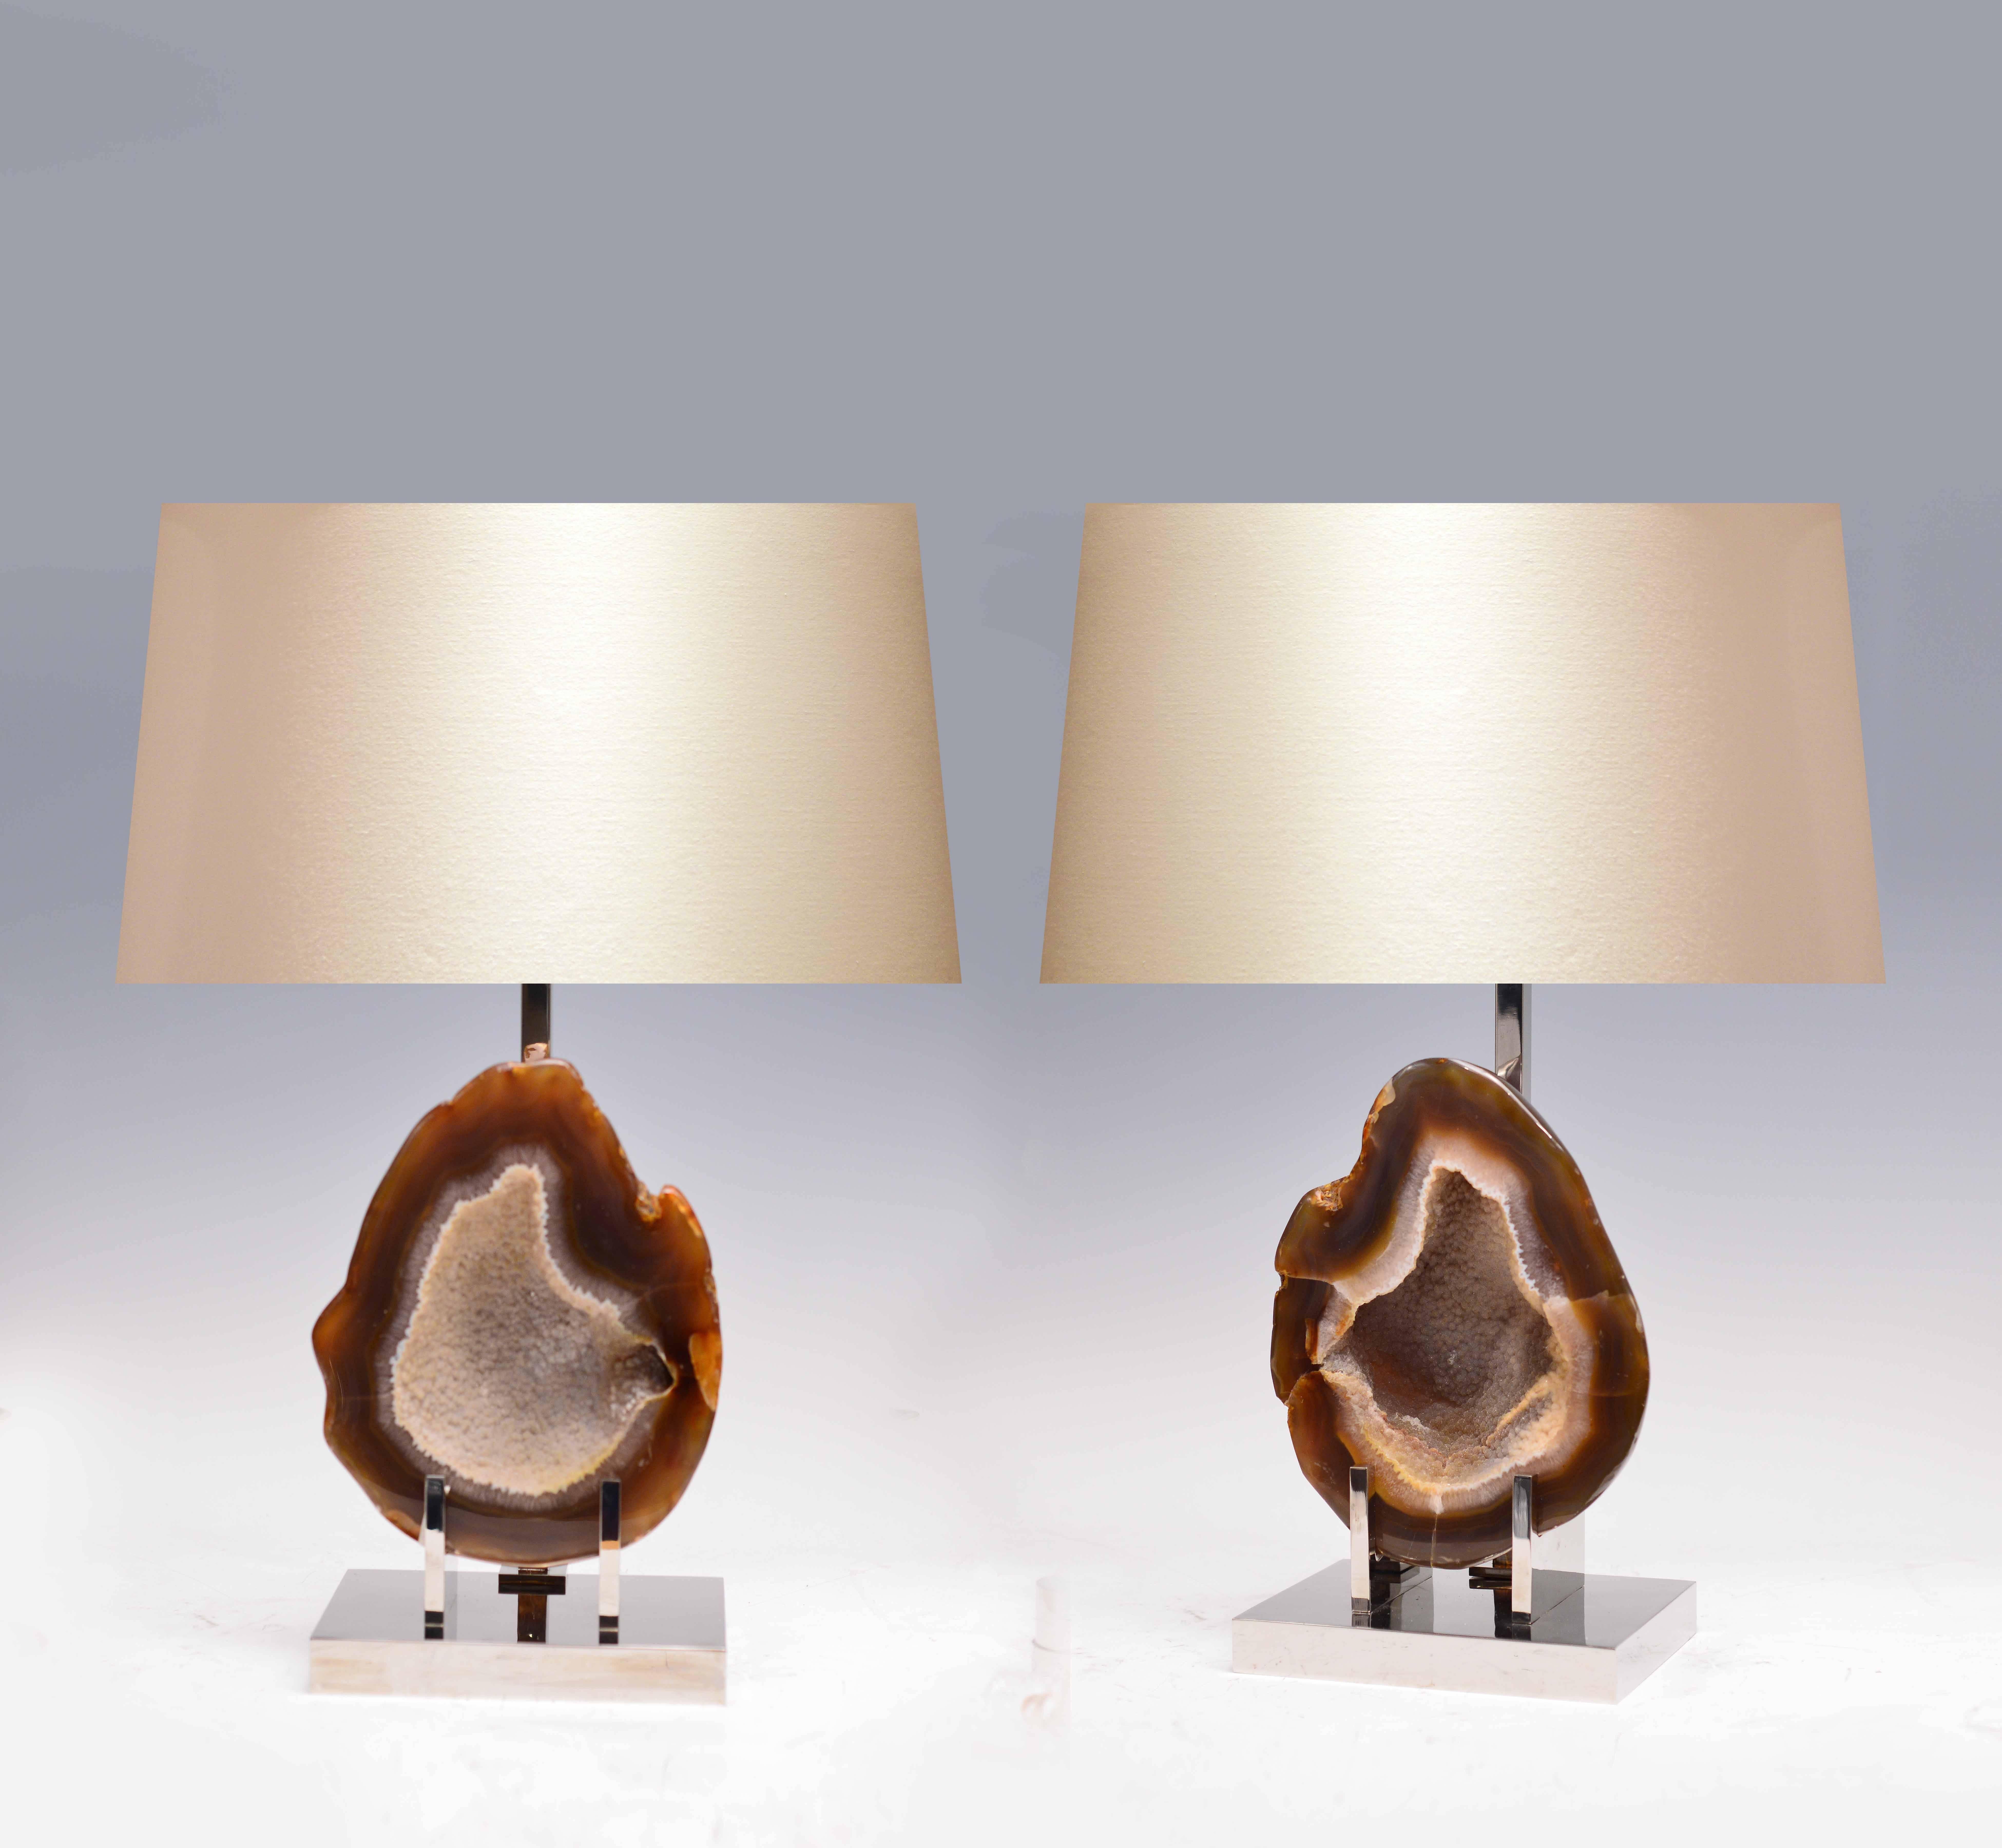 Ein Paar seltene Lampen aus natürlichem Achat mit vernickeltem Ständer, geschaffen von Phoenix Gallery.
(Lampenschirm nicht enthalten)
